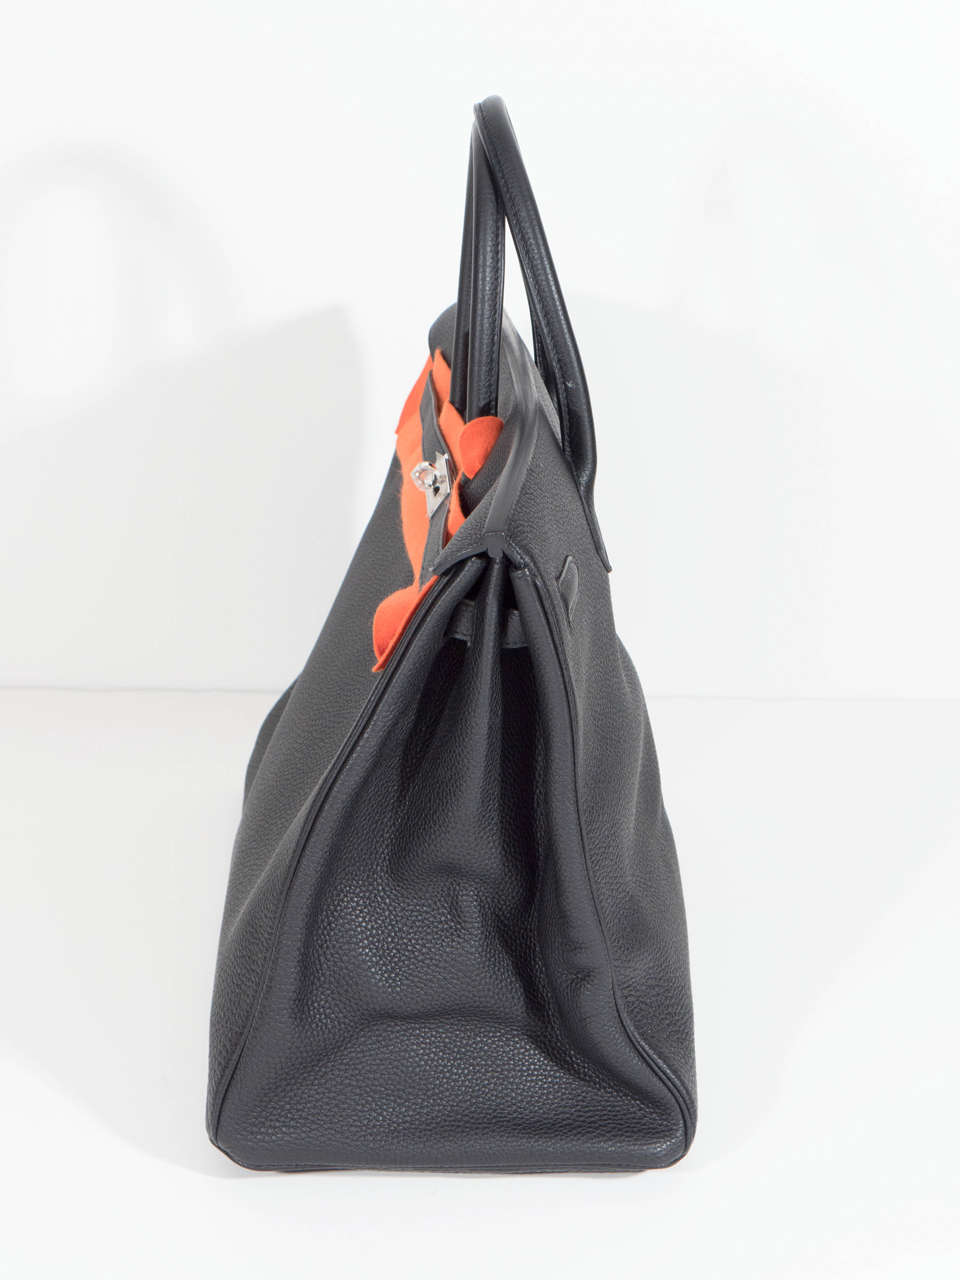 Hermès Paris Birkin Bag 40 in Togo Leather with Palladium Hardware, 2008 For Sale 2